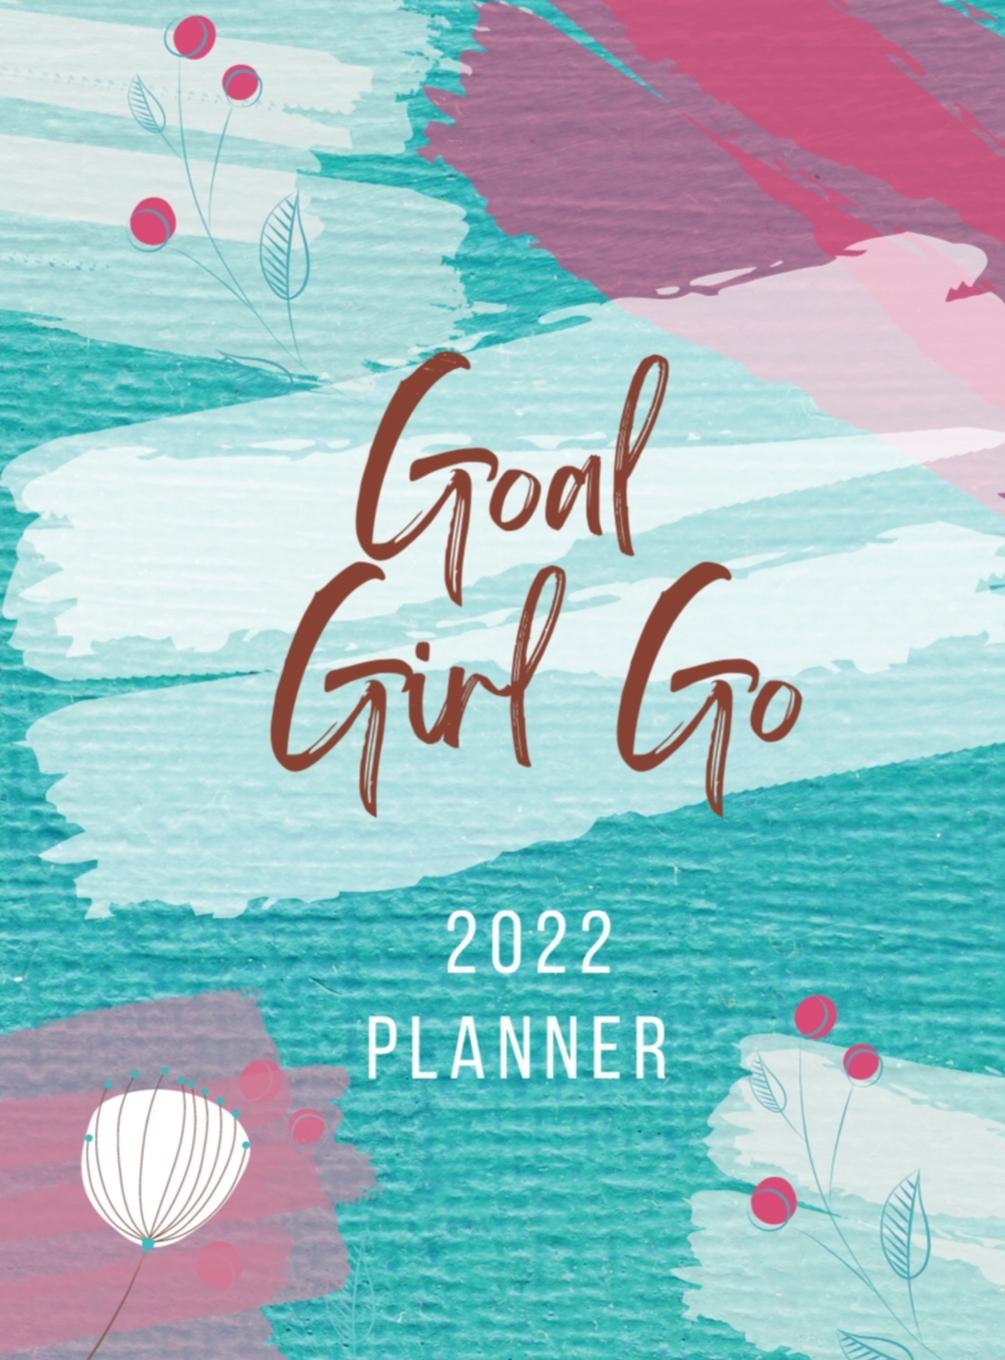 Kniha Goal Girl Go 2022 Planner 